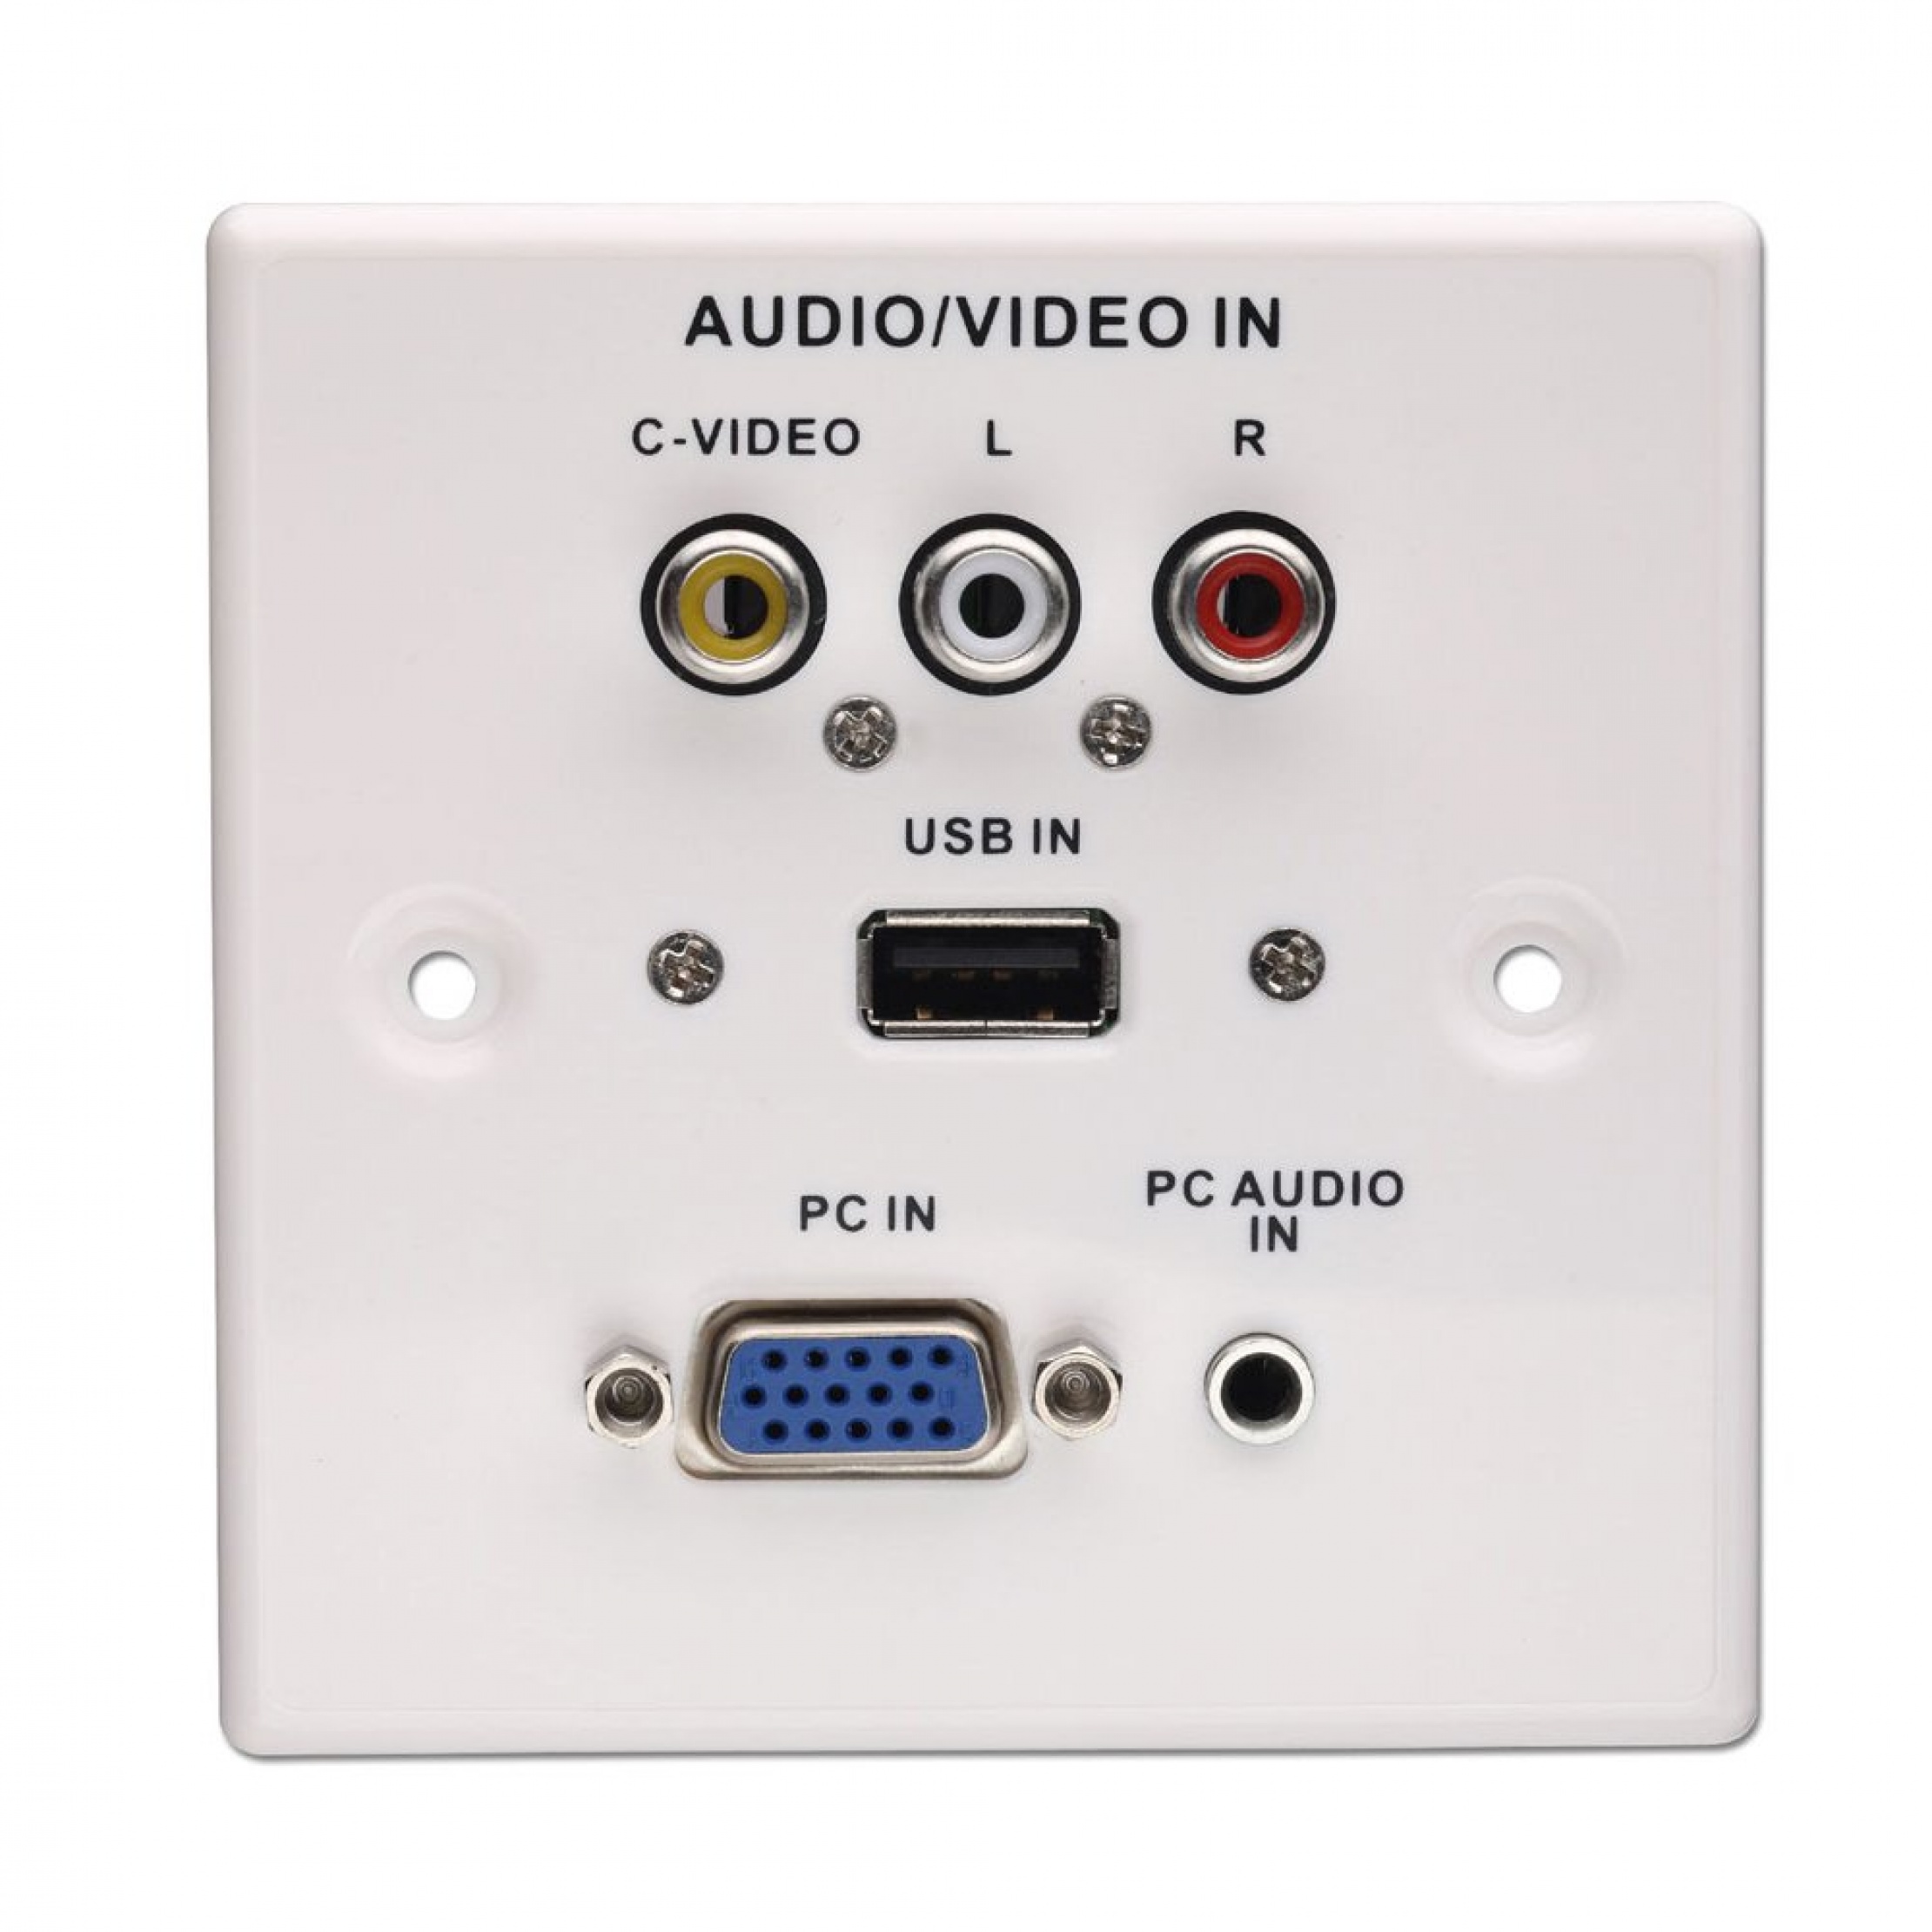 Audio на пк. Панель USB Audio pc1. Аудио input. USB Audio Jack USB 2.0. PC Audio.